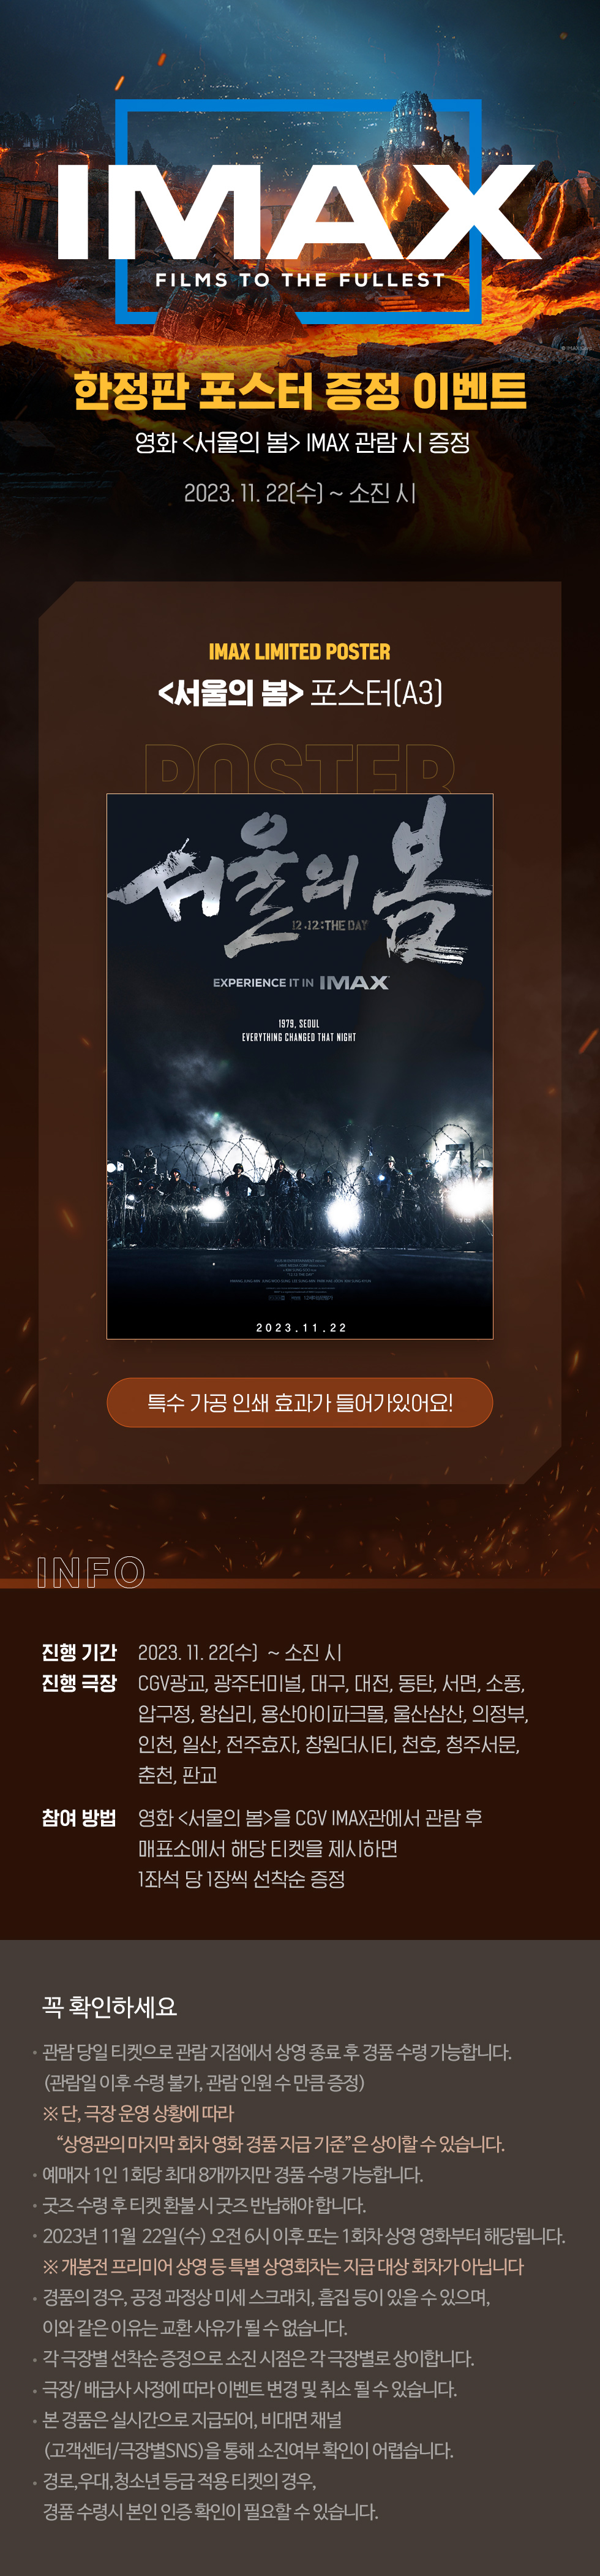 스페셜이벤트 [서울의 봄]
IMAX 포스터